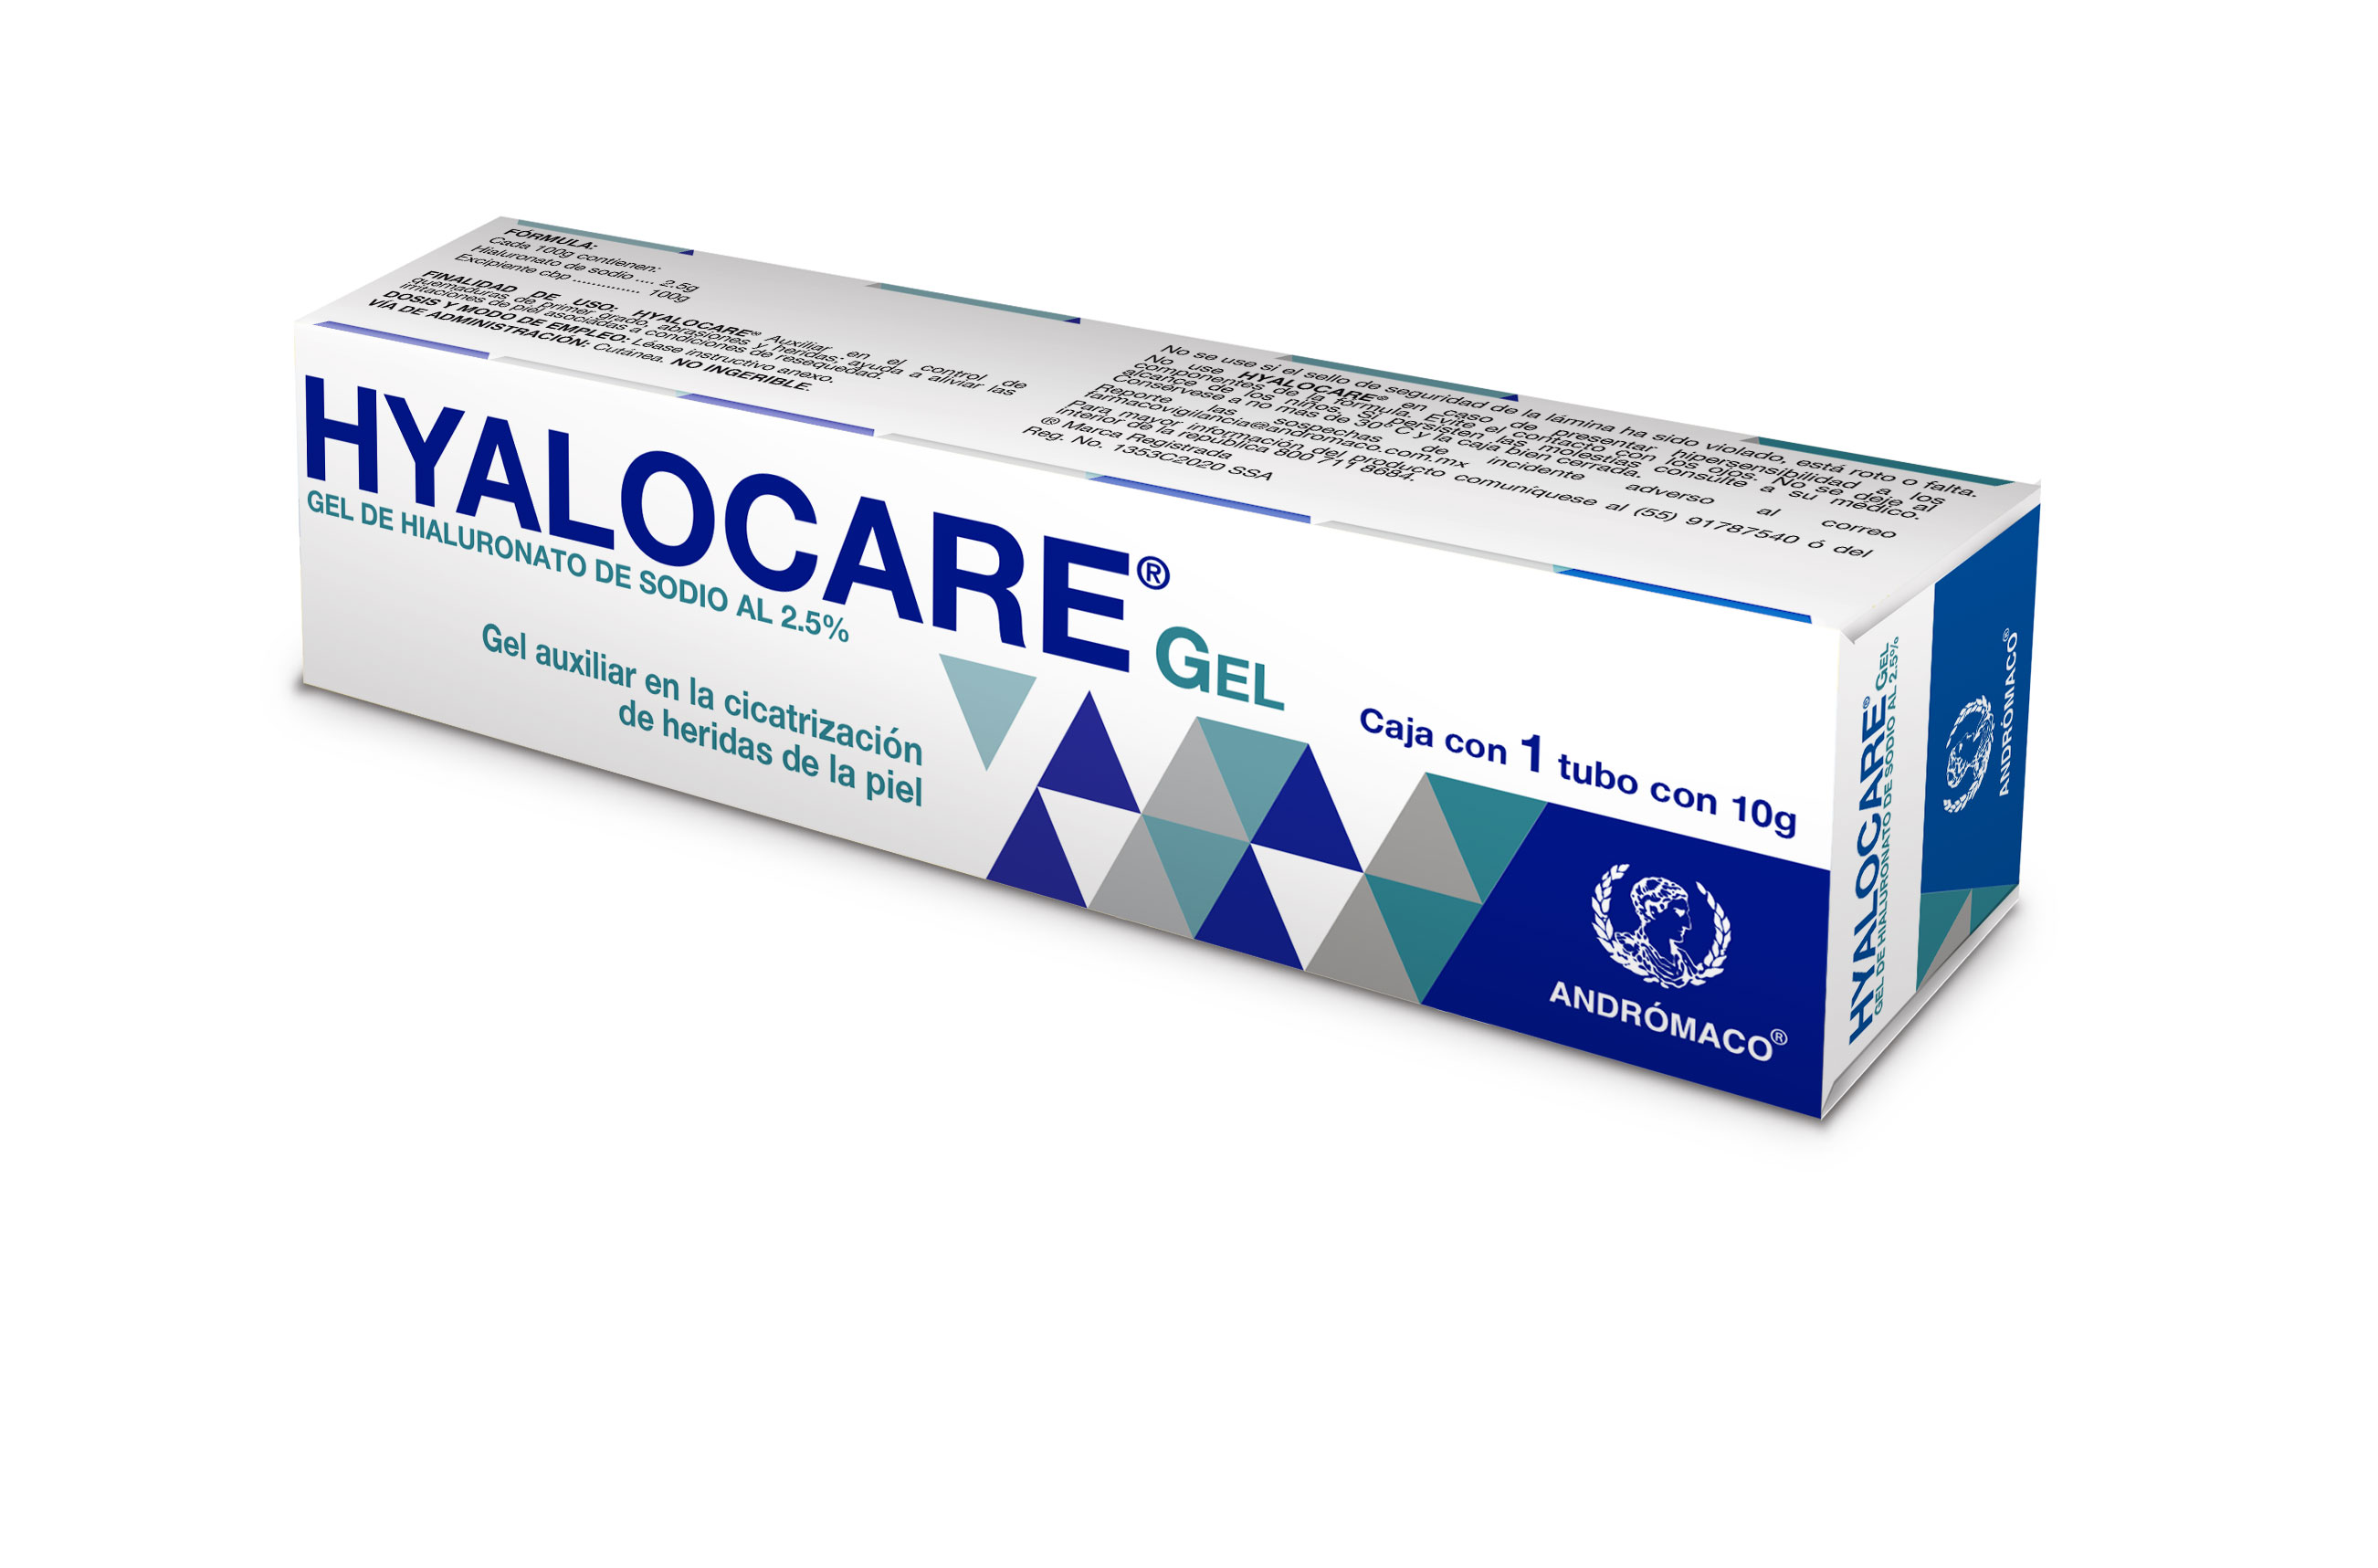 Hyalocare Caja con 1 tubo con 10g